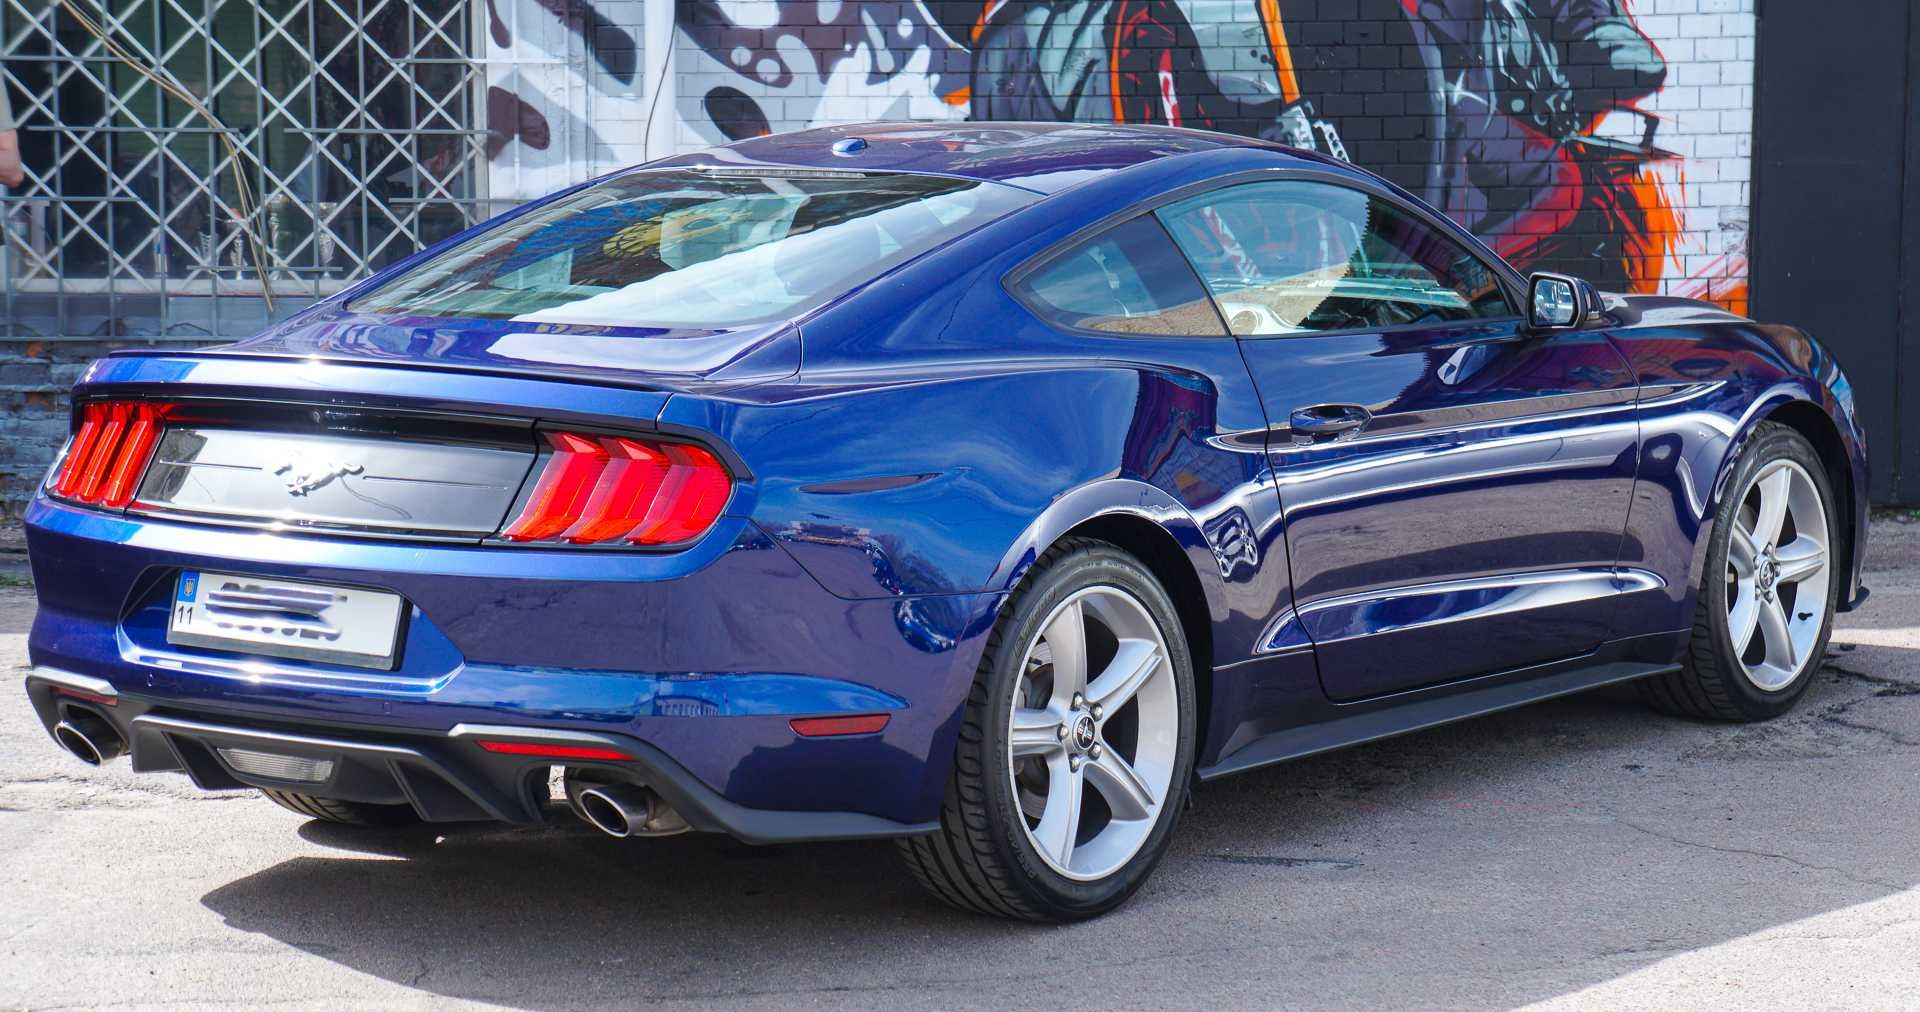 Автомобиль Ford Mustang 2018 рестайлинг